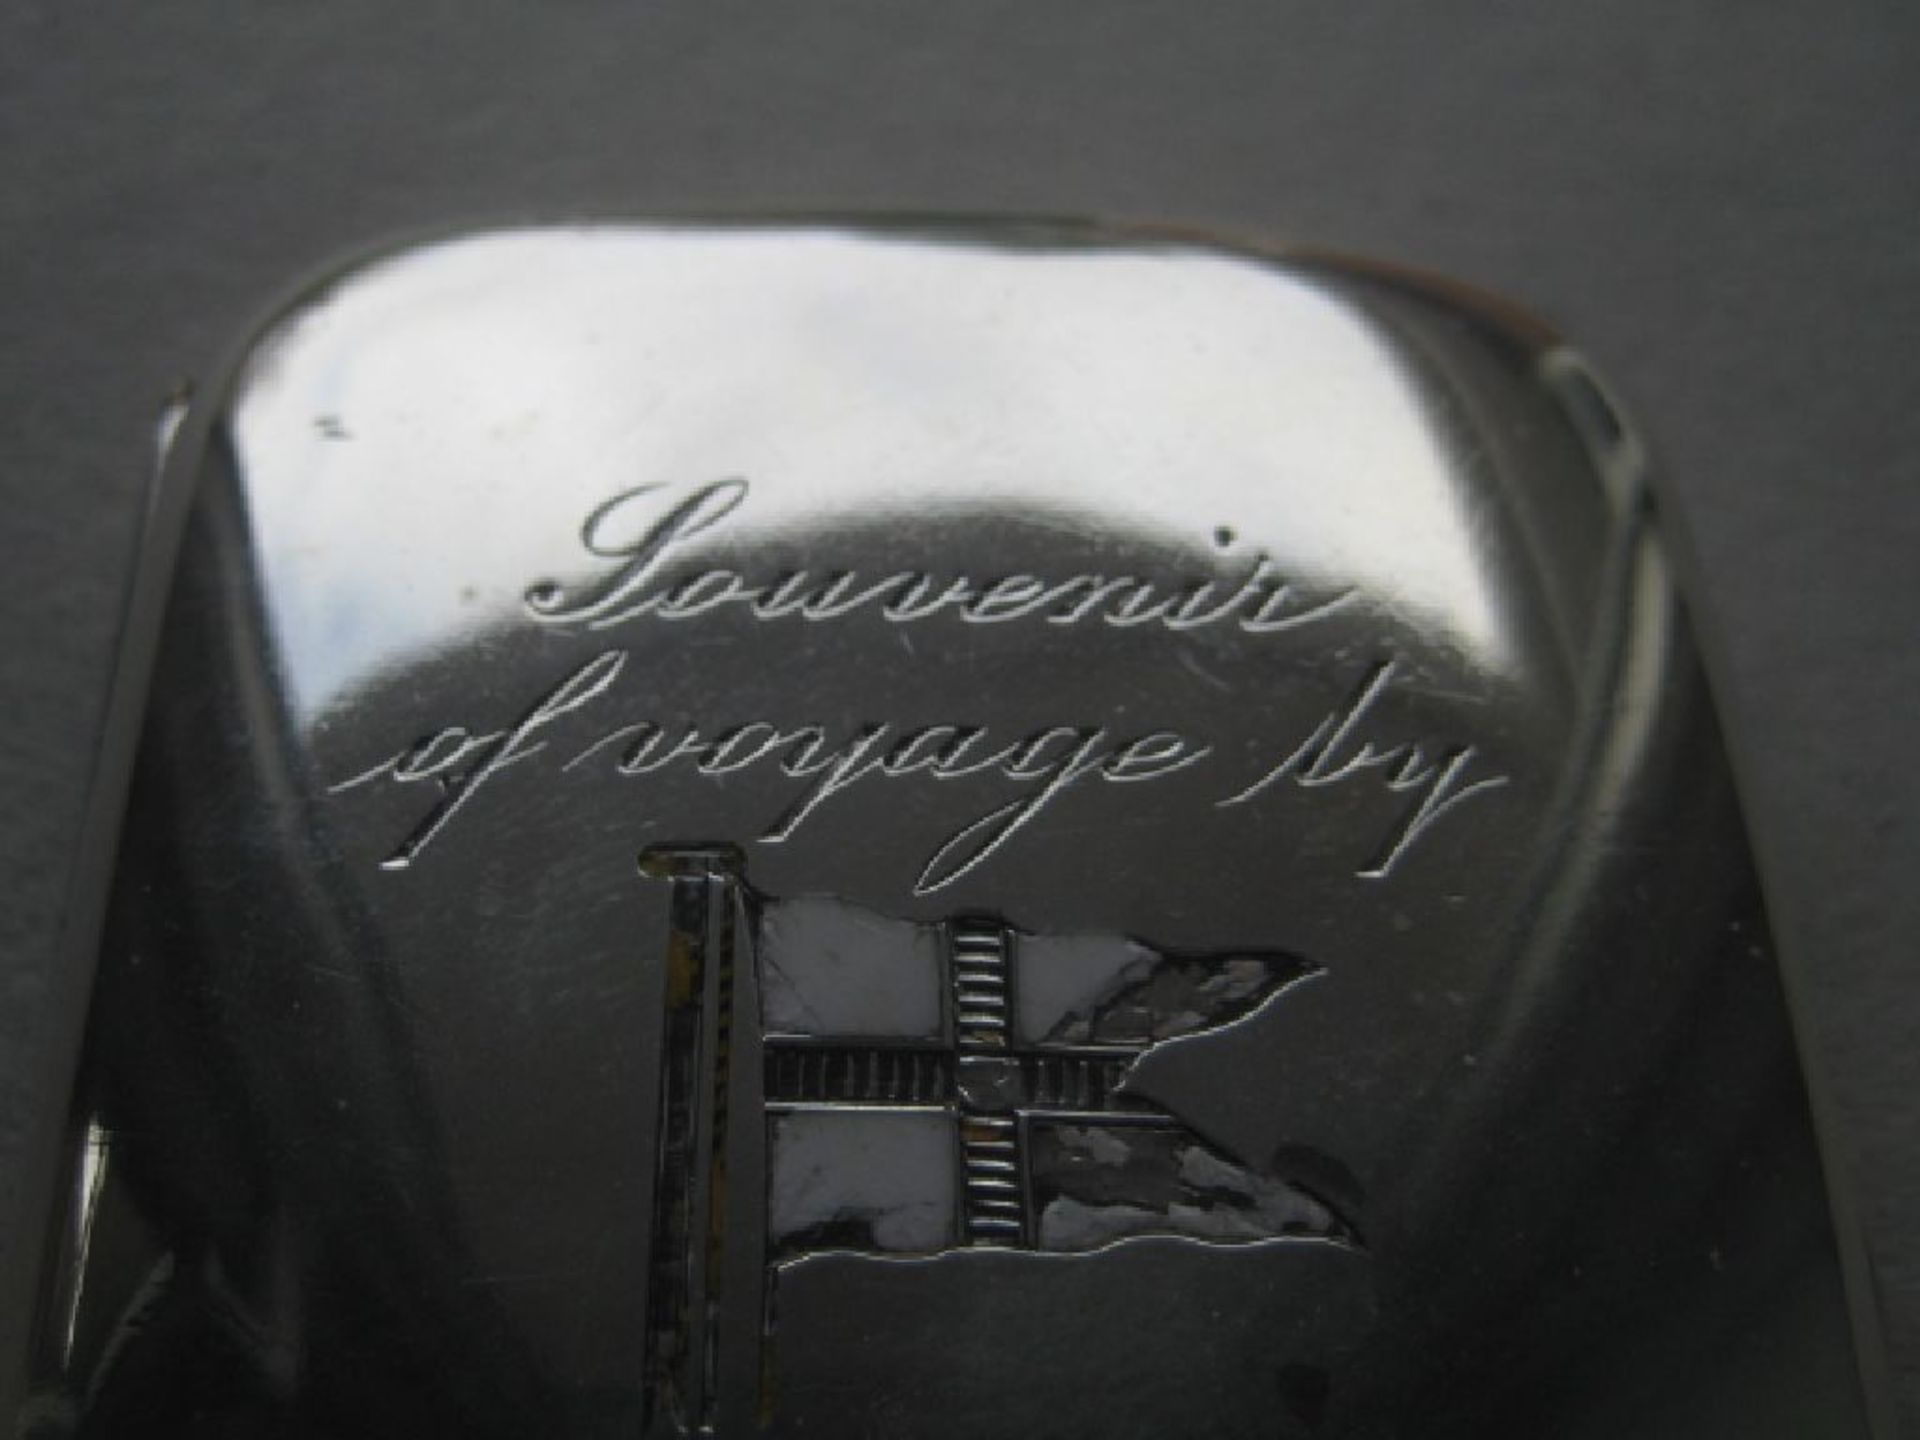 Edwardian Elder Dempster's R.M.J. Nigeria Engraved Silver Cigarette Case - Image 9 of 9